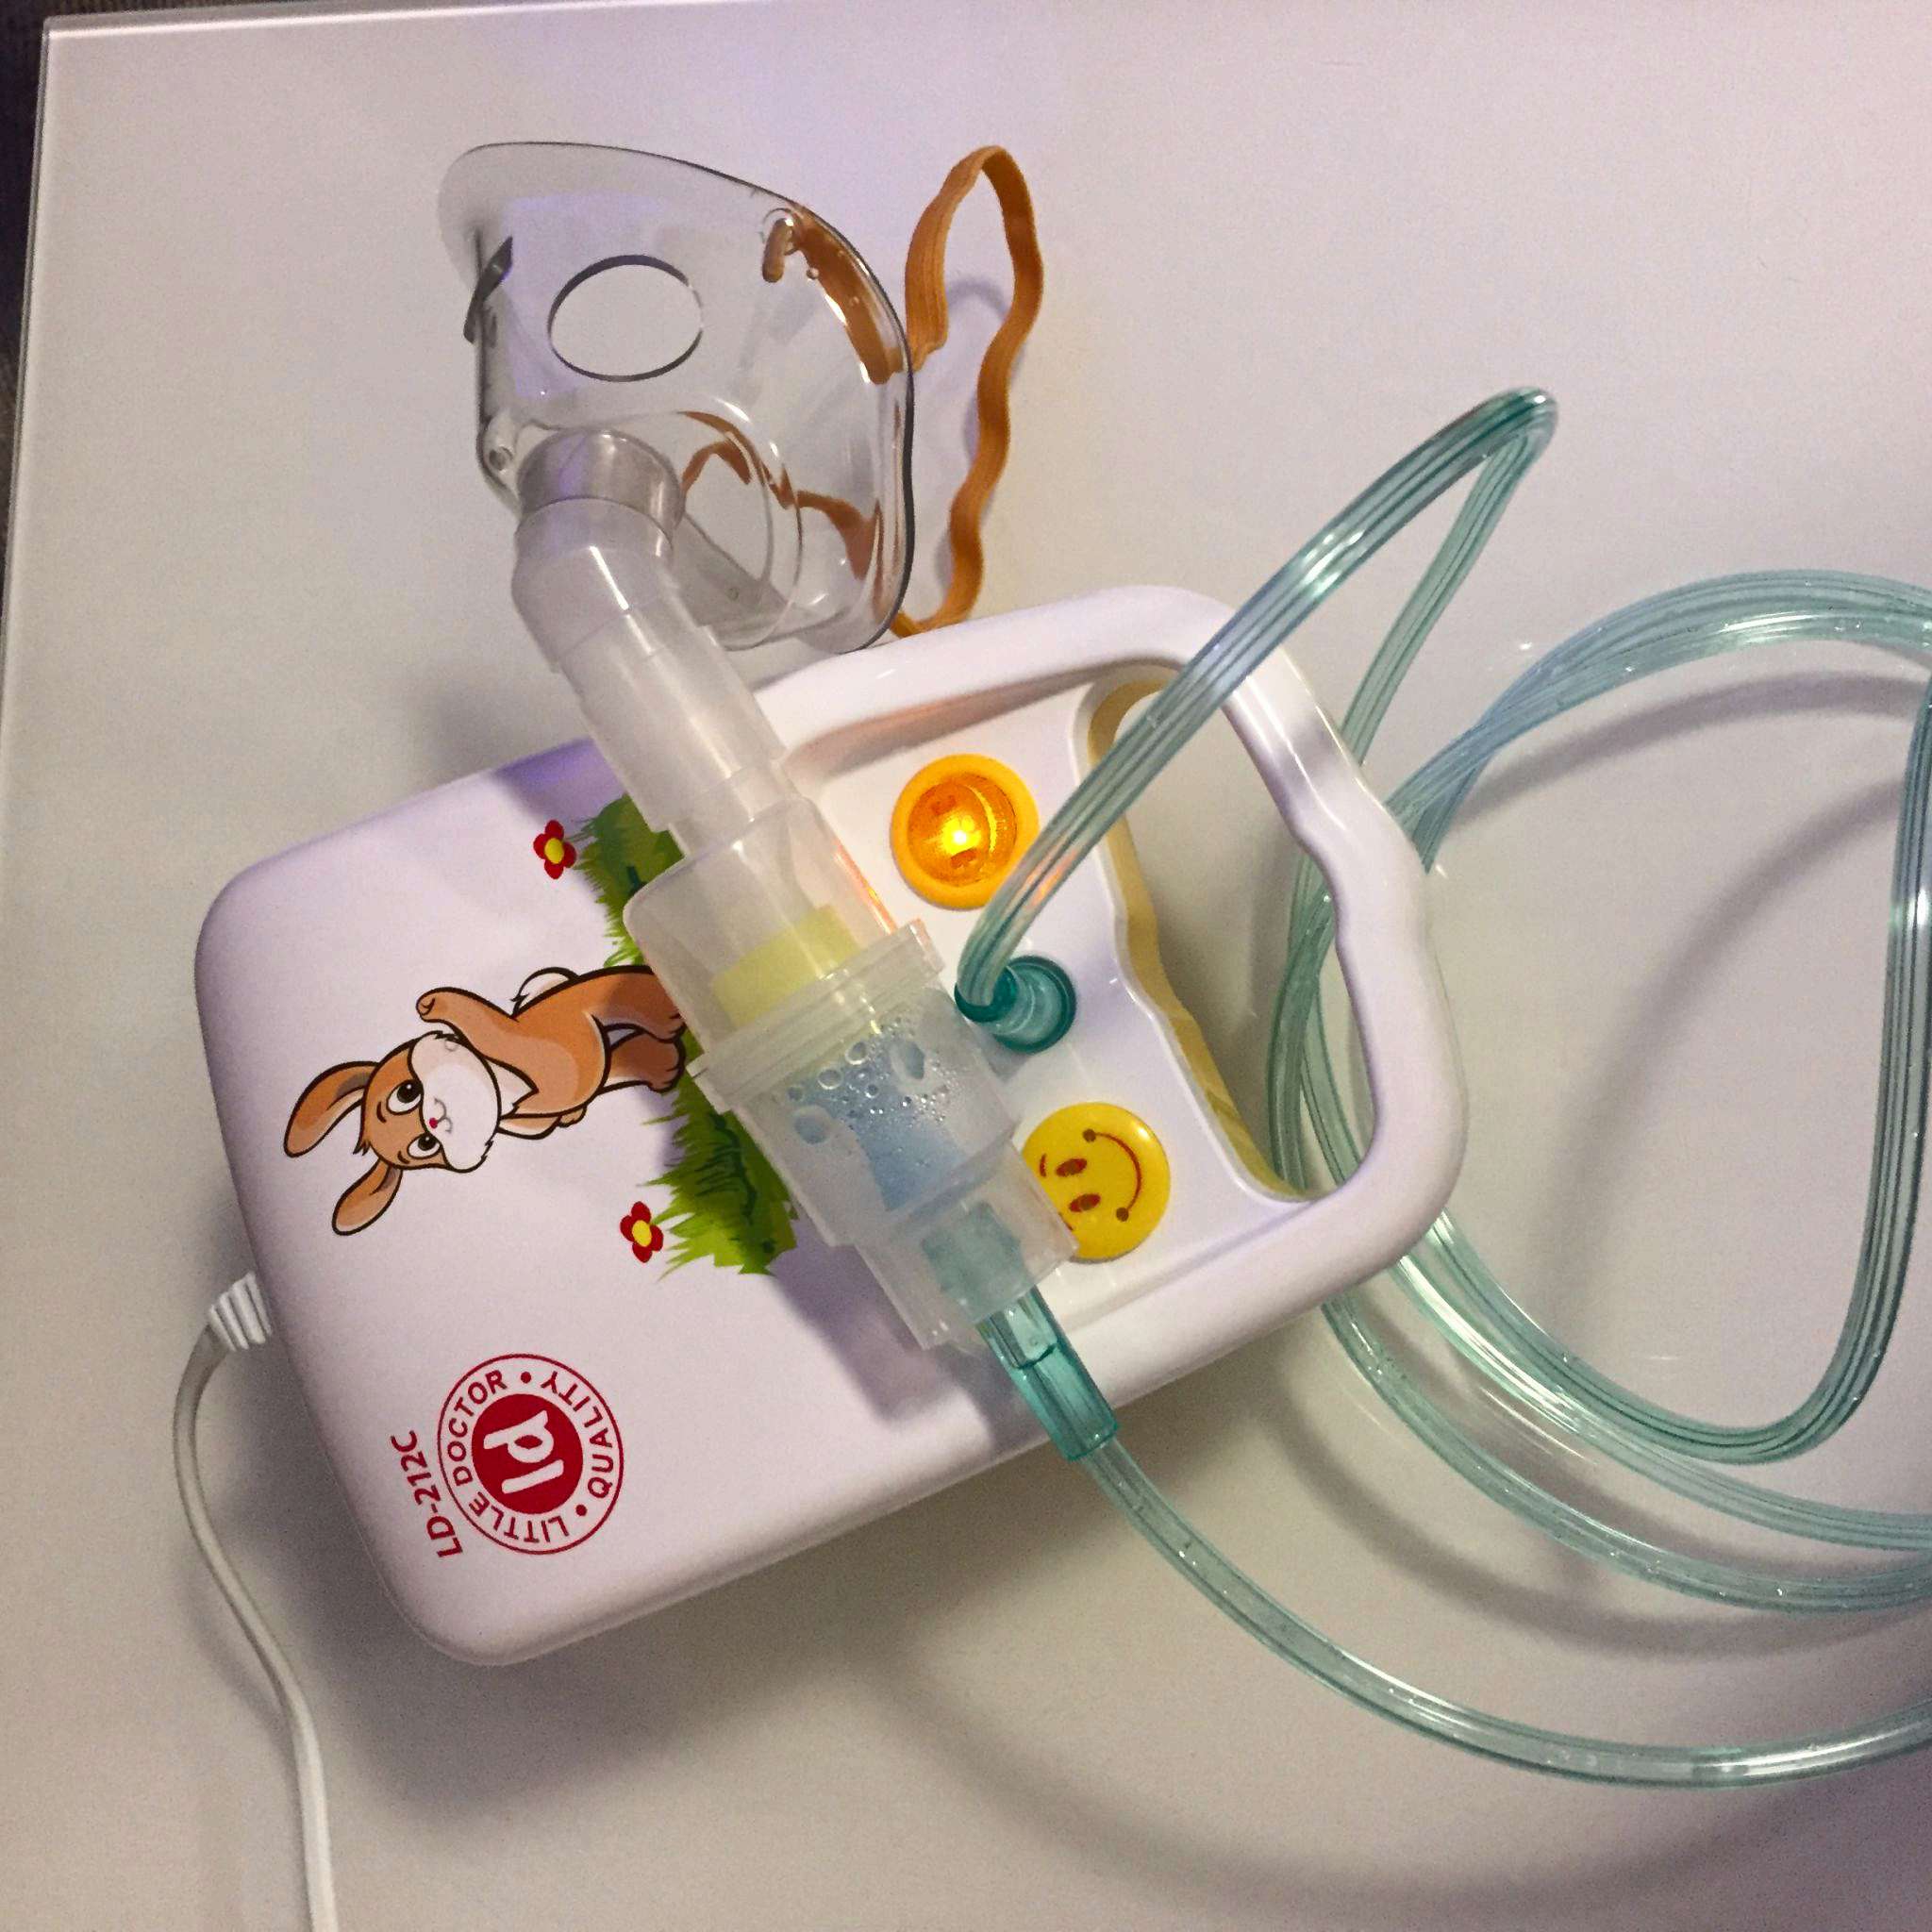 Как собрать ингалятор литл доктор можно ли дышать ромашкой через ингалятор детям